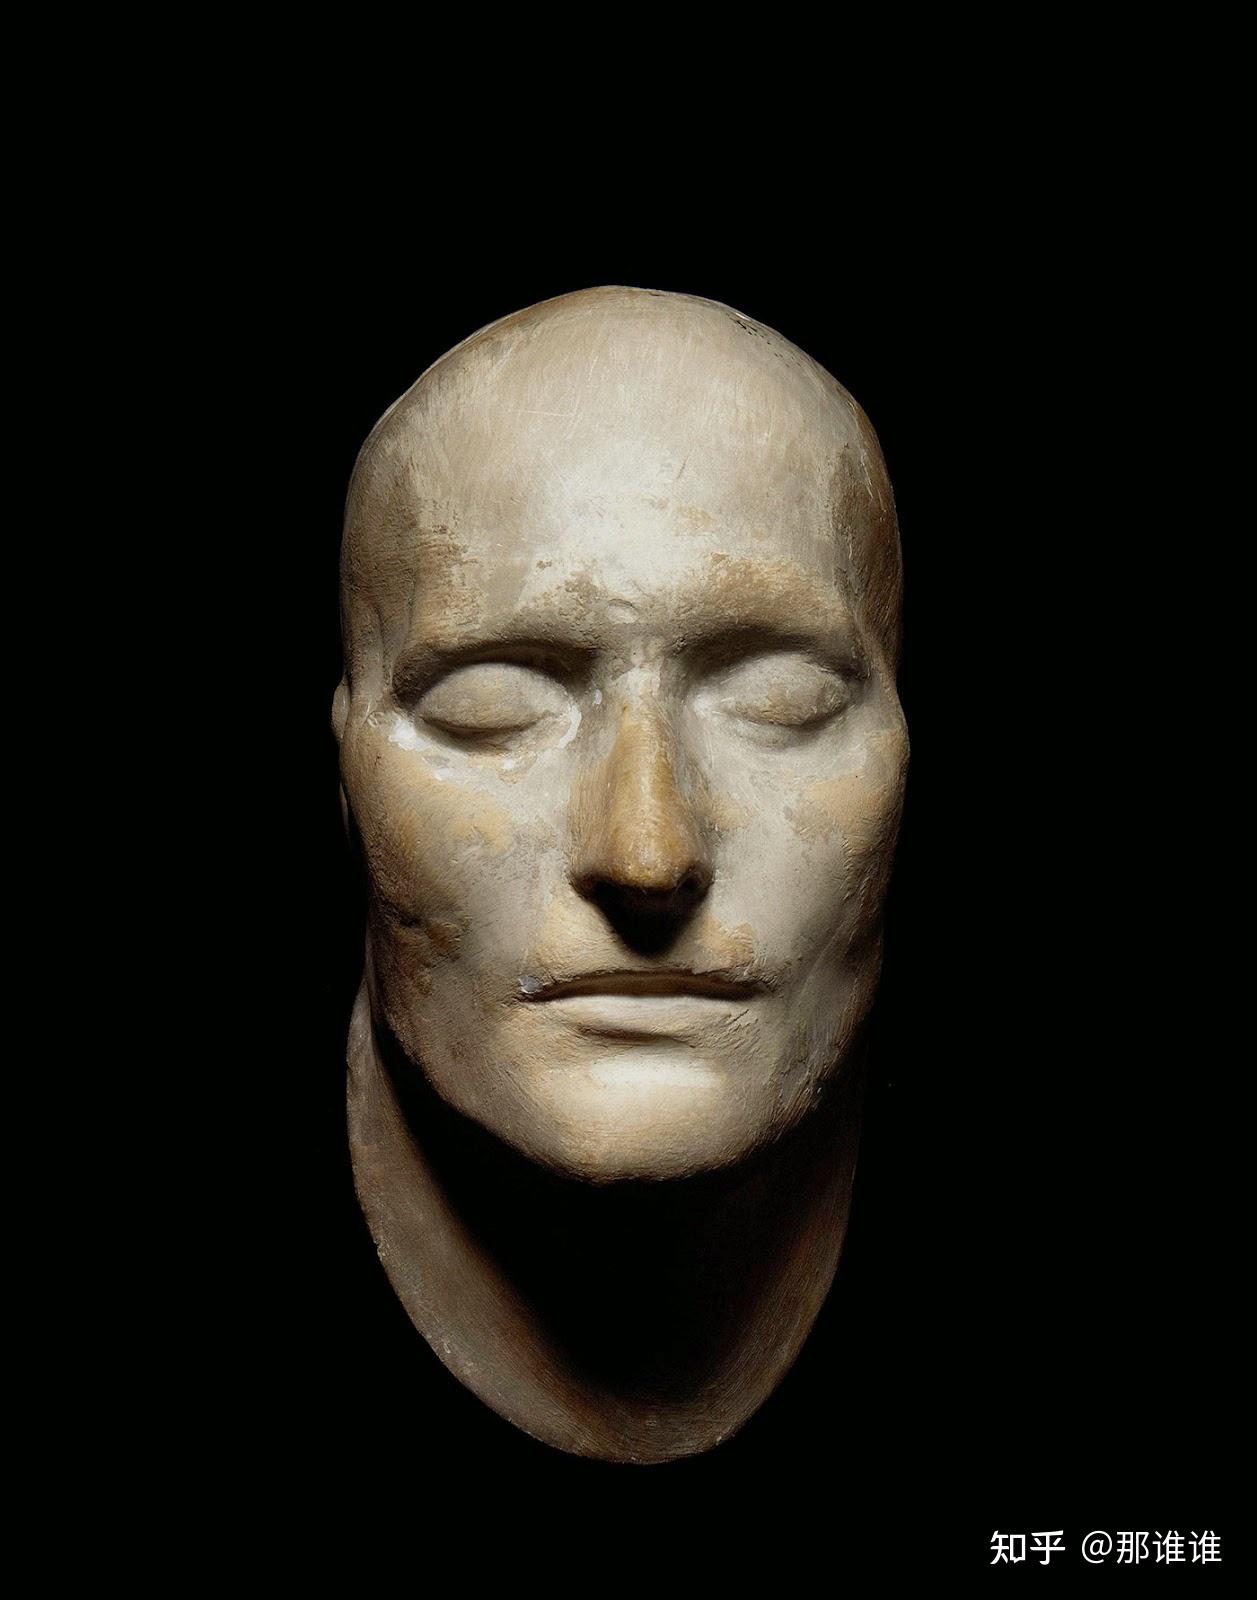 拿破仑·波拿巴的死亡面具,制作于1821年(点击可看大图)1821年5月5日